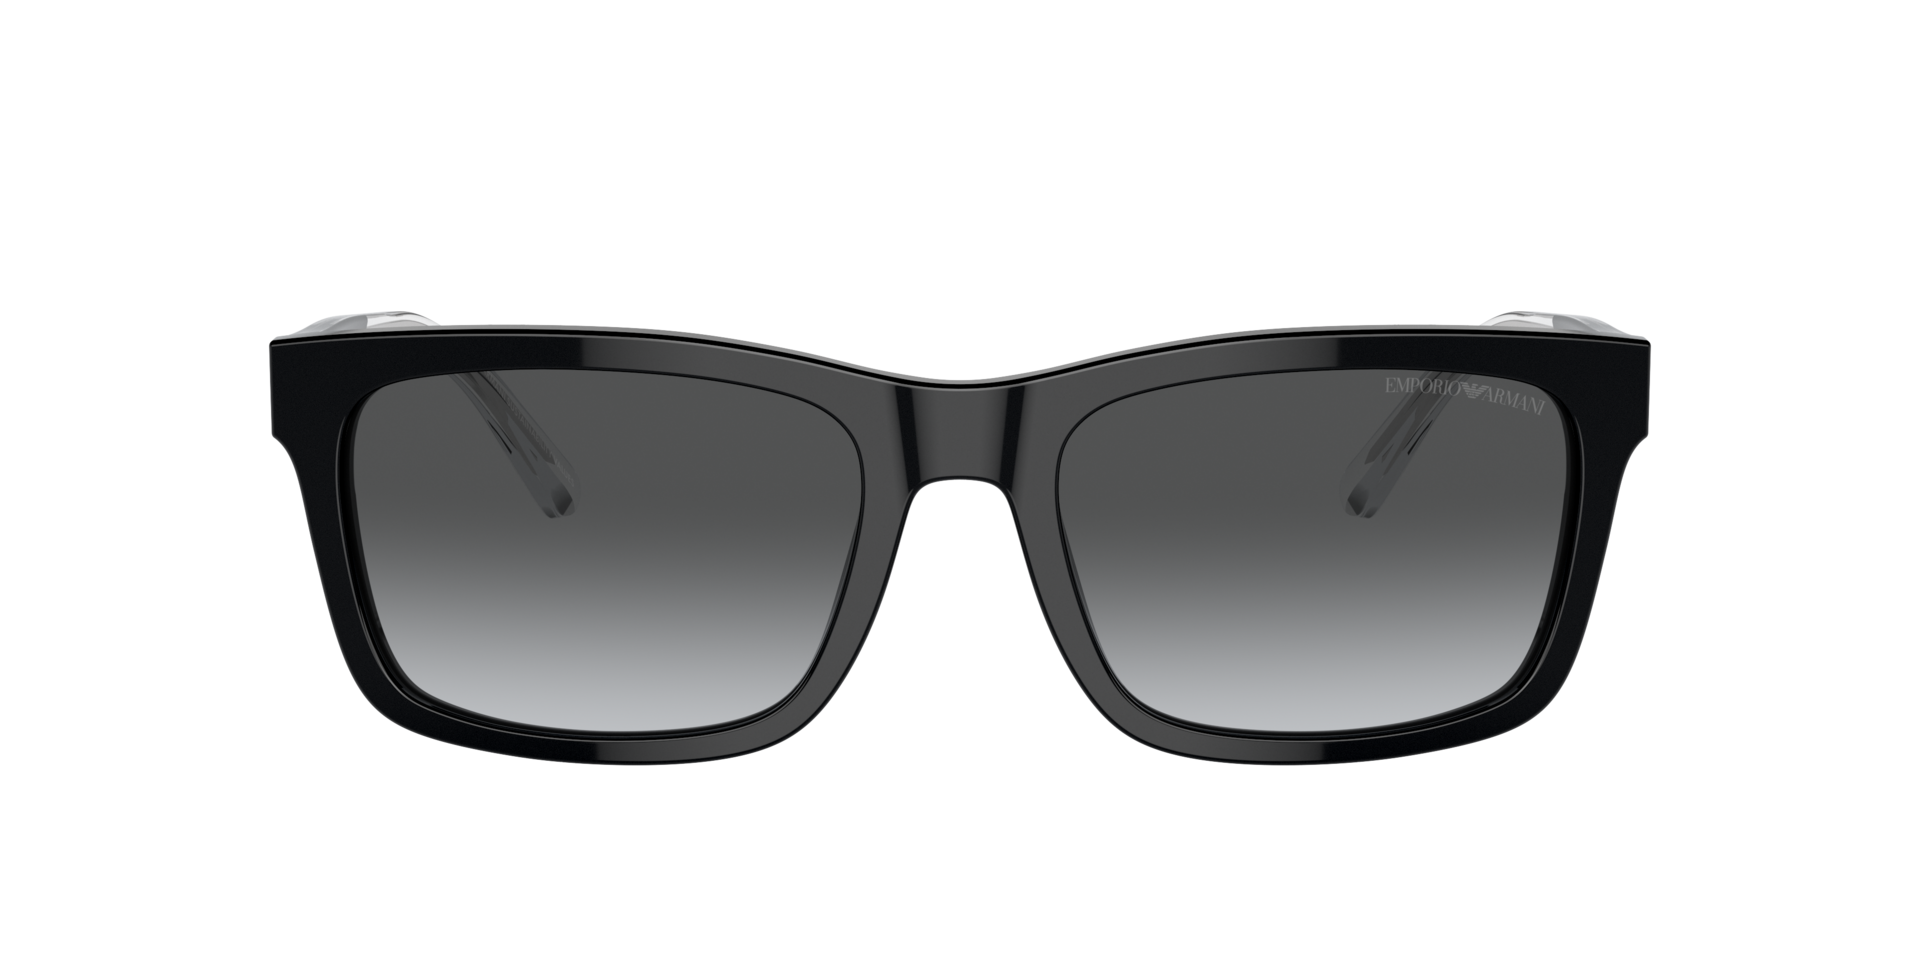 Das Bild zeigt die Sonnenbrille EA4224 5017T3 von der Marke Emporio Armani in schwarz.